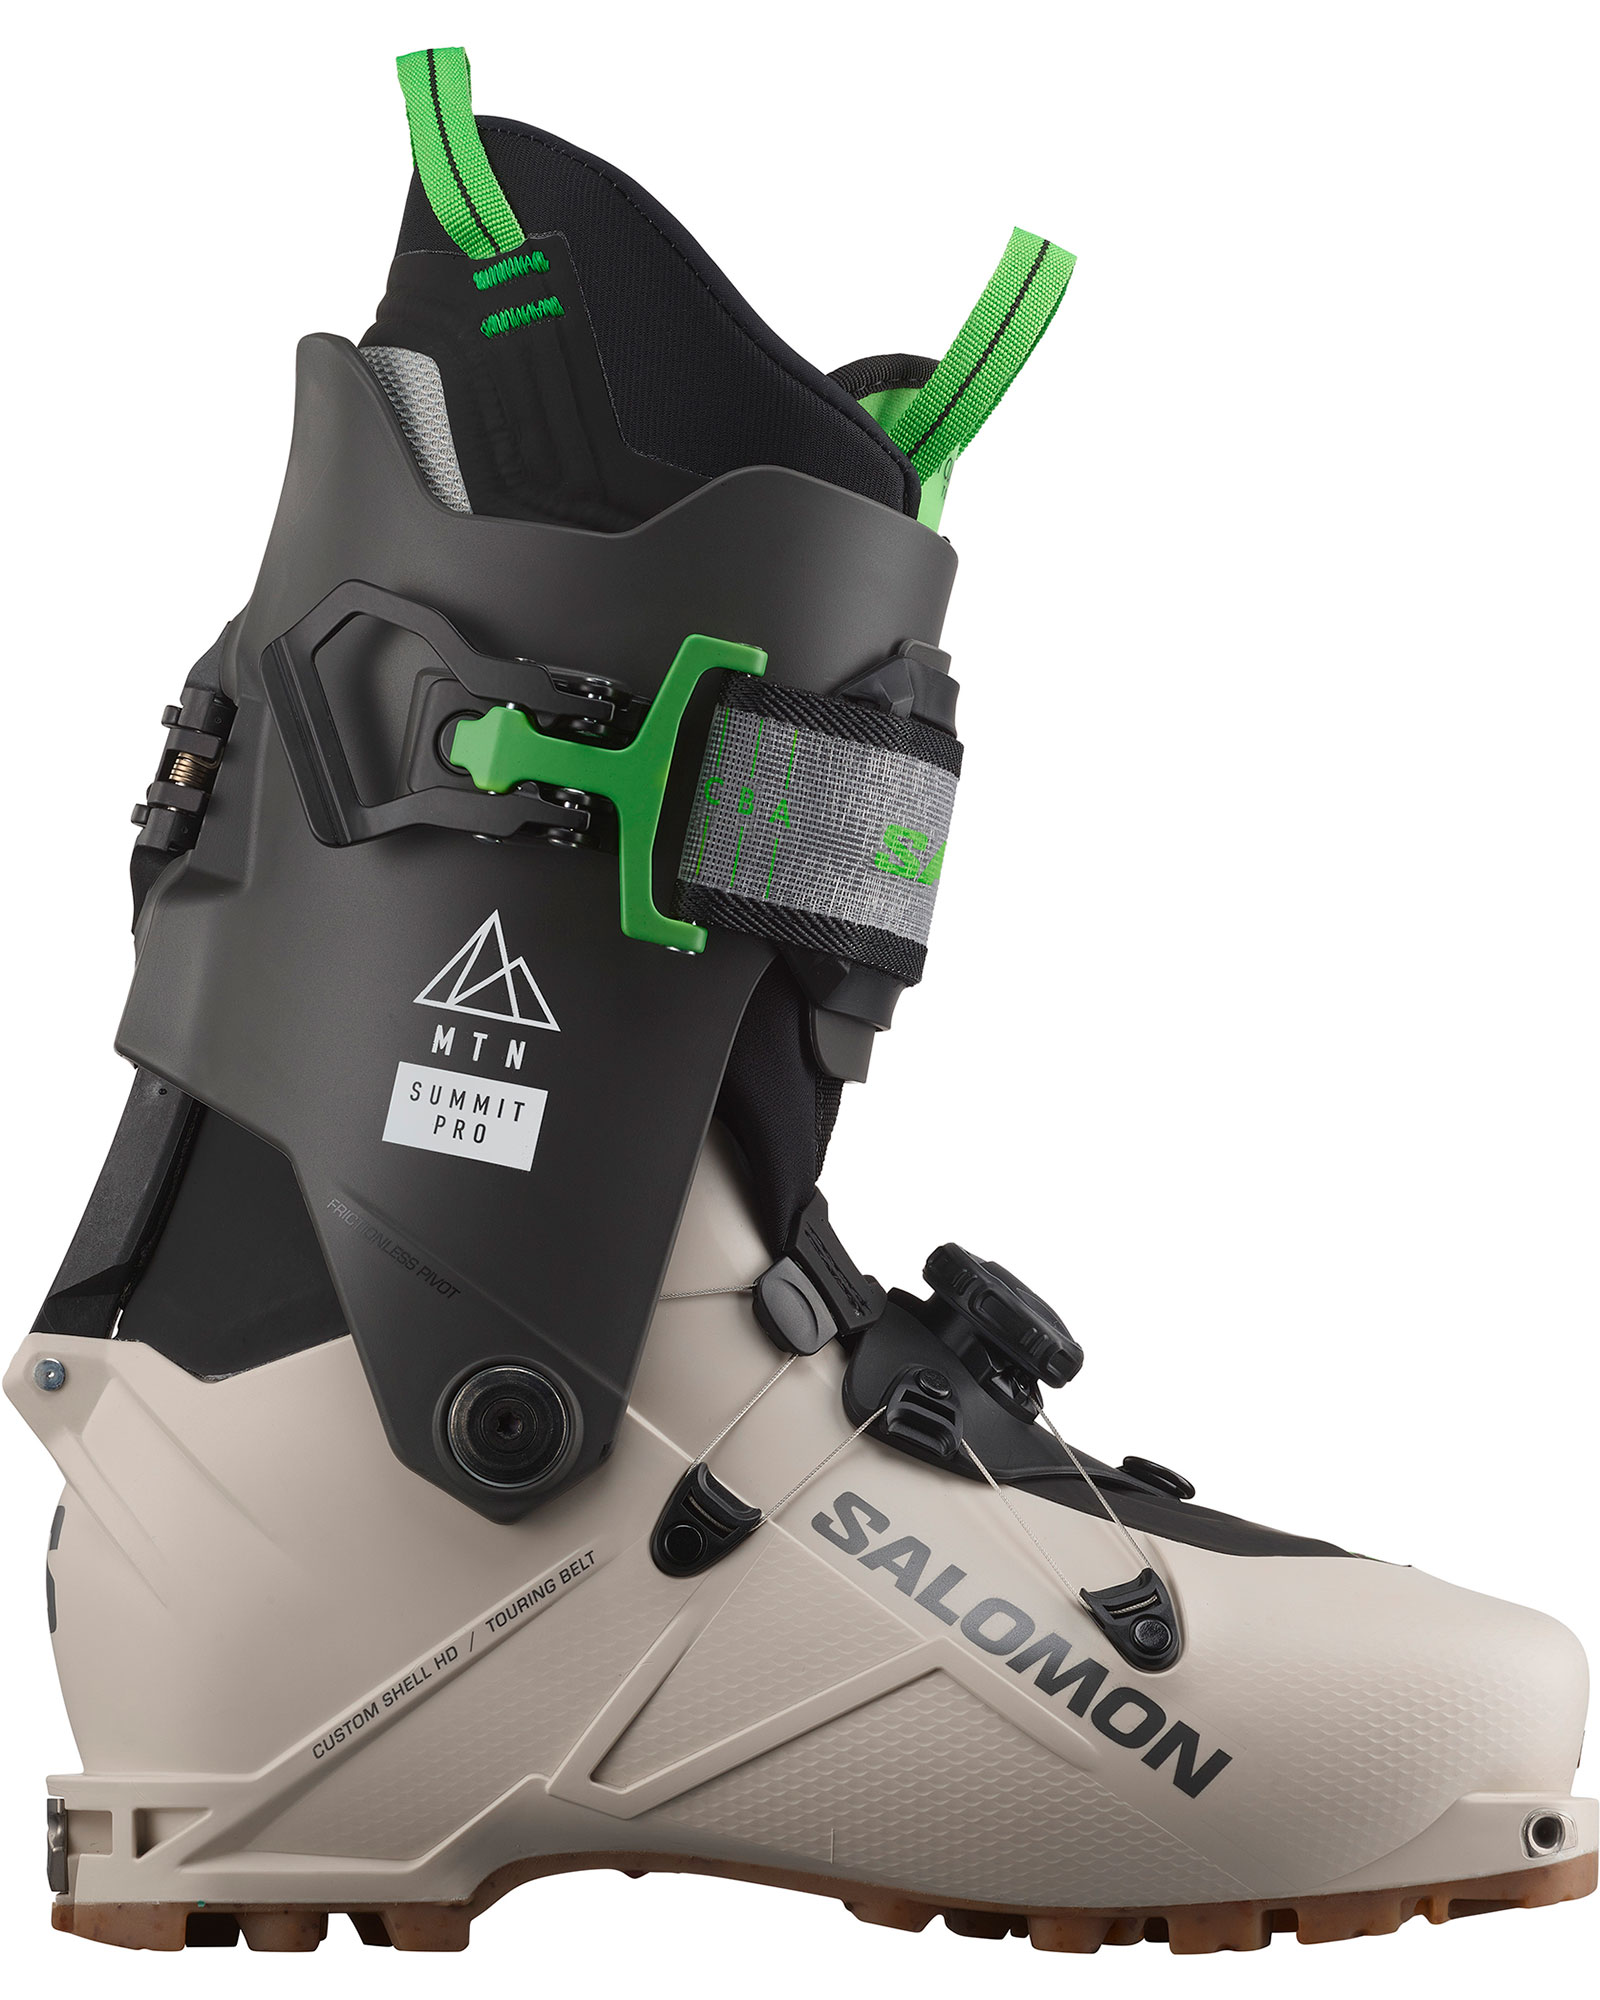 Salomon Mtn Summit Pro Mens Ski Boots 2023